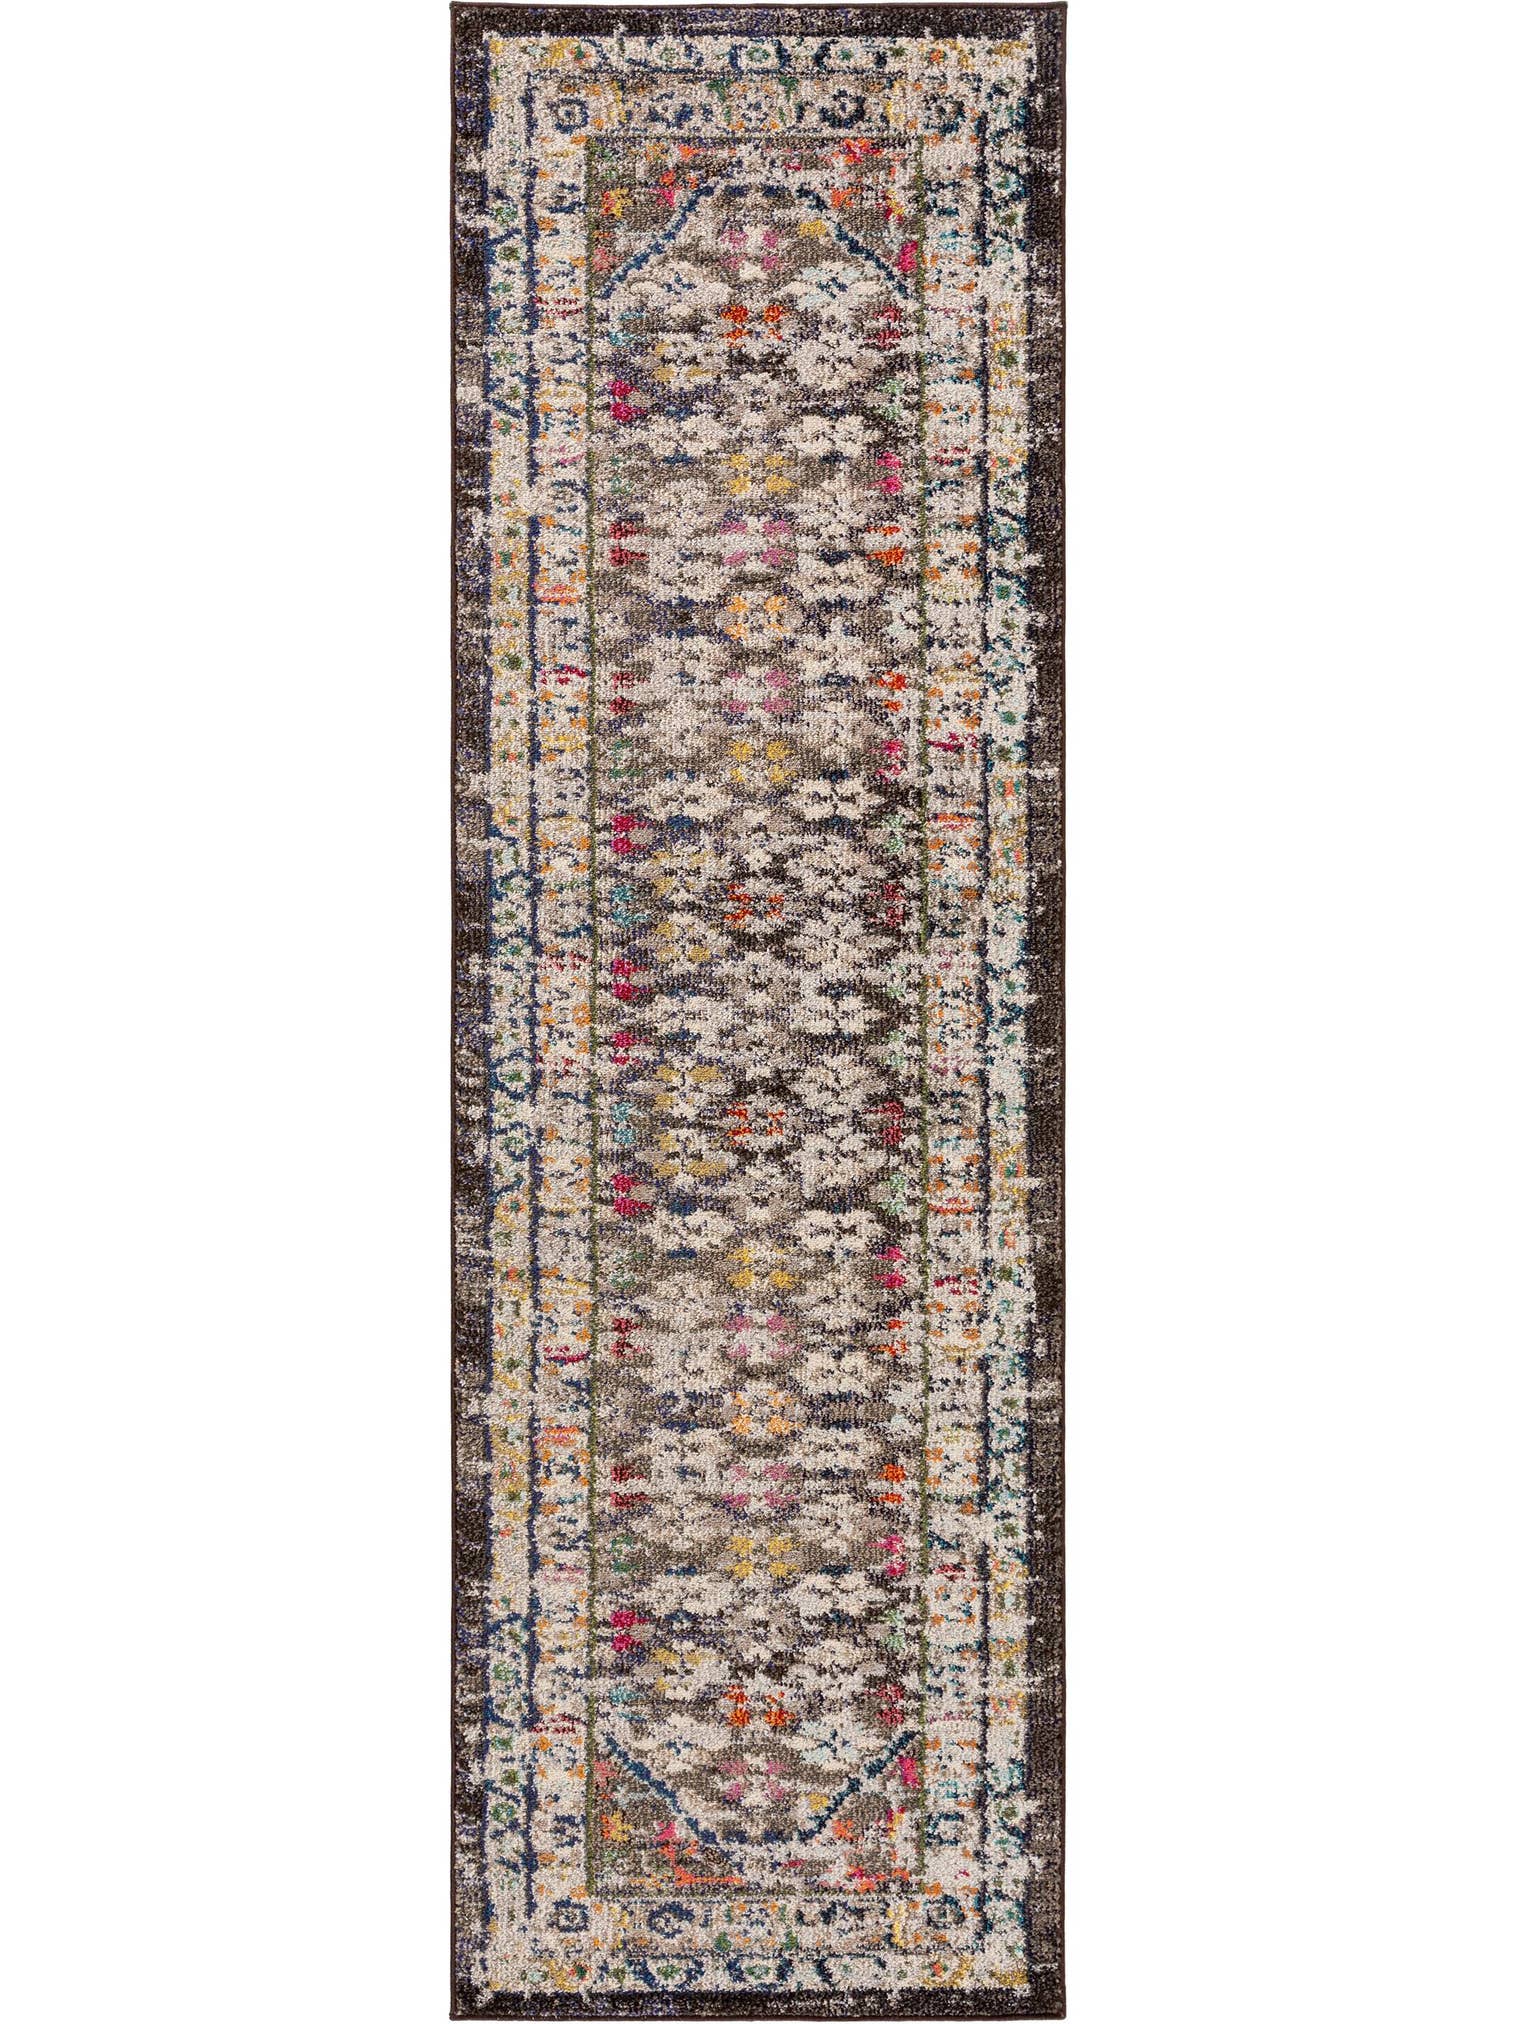 Teppich aus 100% Polypropylen in Multicolor mit 11 bis 20 mm hohem Flor von benuta